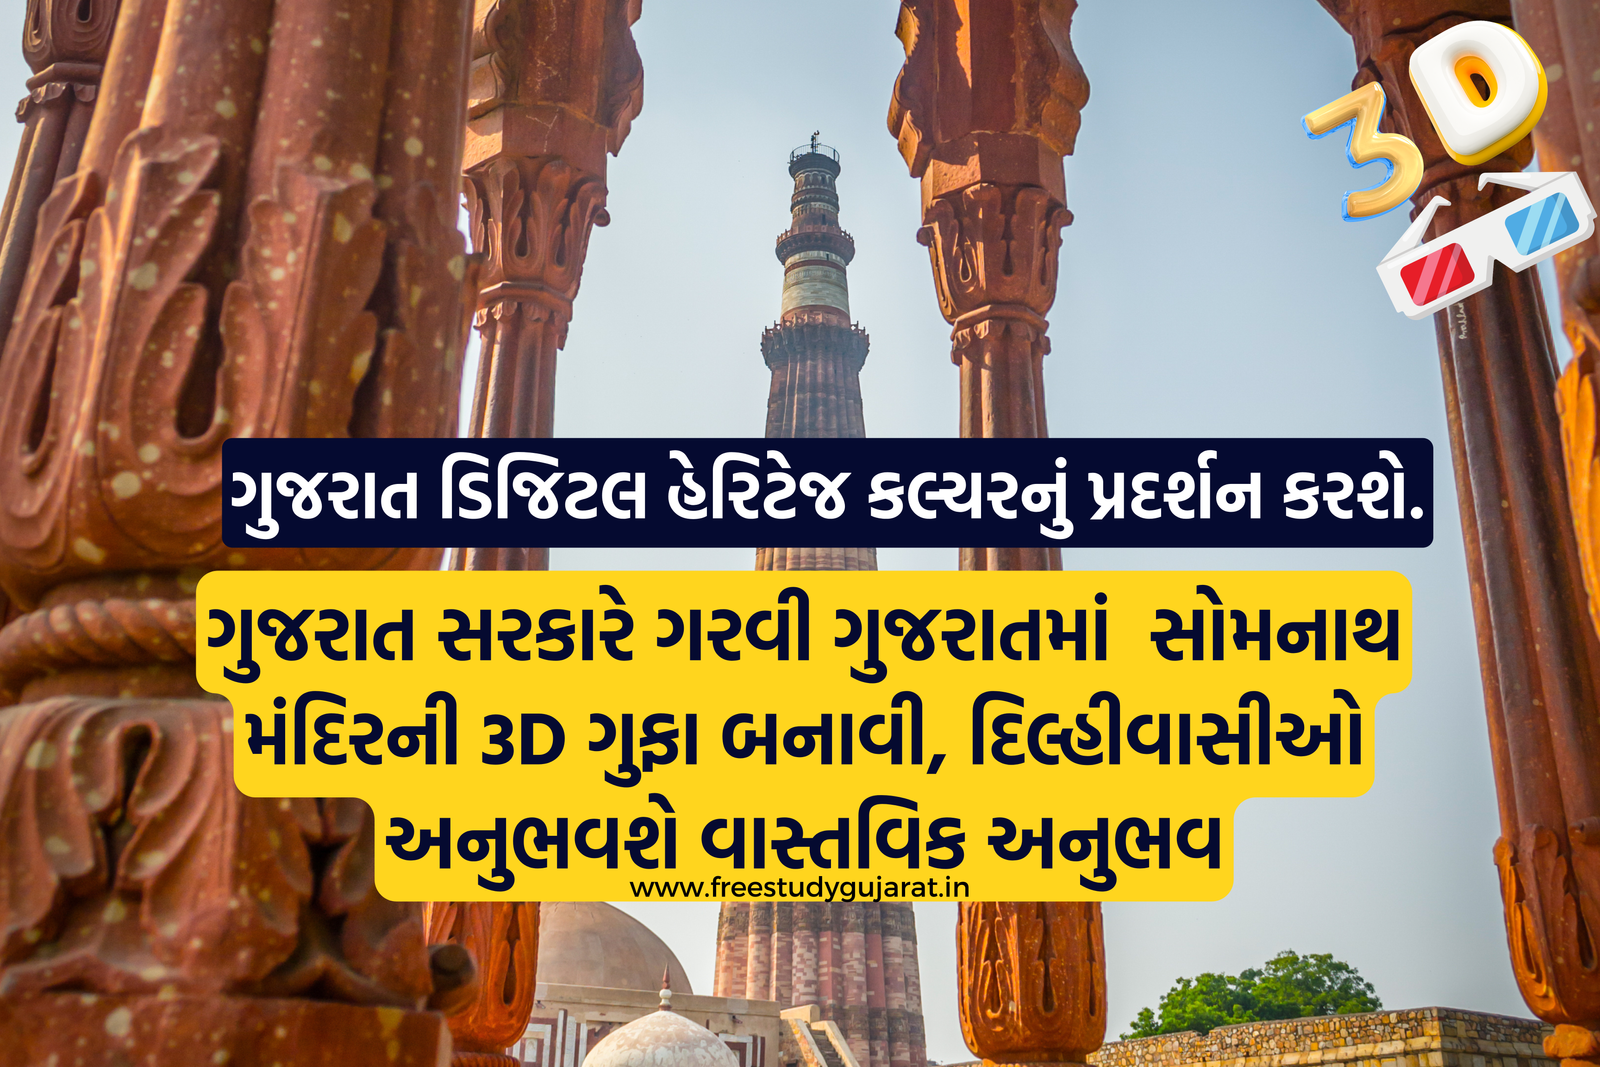 સરકારે ગરવી ગુજરાતમાં સોમનાથ મંદિરની 3D ગુફા બનાવી દિલ્હીવાસીઓ અનુભવશે વાસ્તવિક અનુભવ, ગુજરાત સરકારે ગરવી ગુજરાતમાં સોમનાથ મંદિરની 3D ગુફા બનાવી, દિલ્હીવાસીઓ અનુભવશે વાસ્તવિક અનુભવ